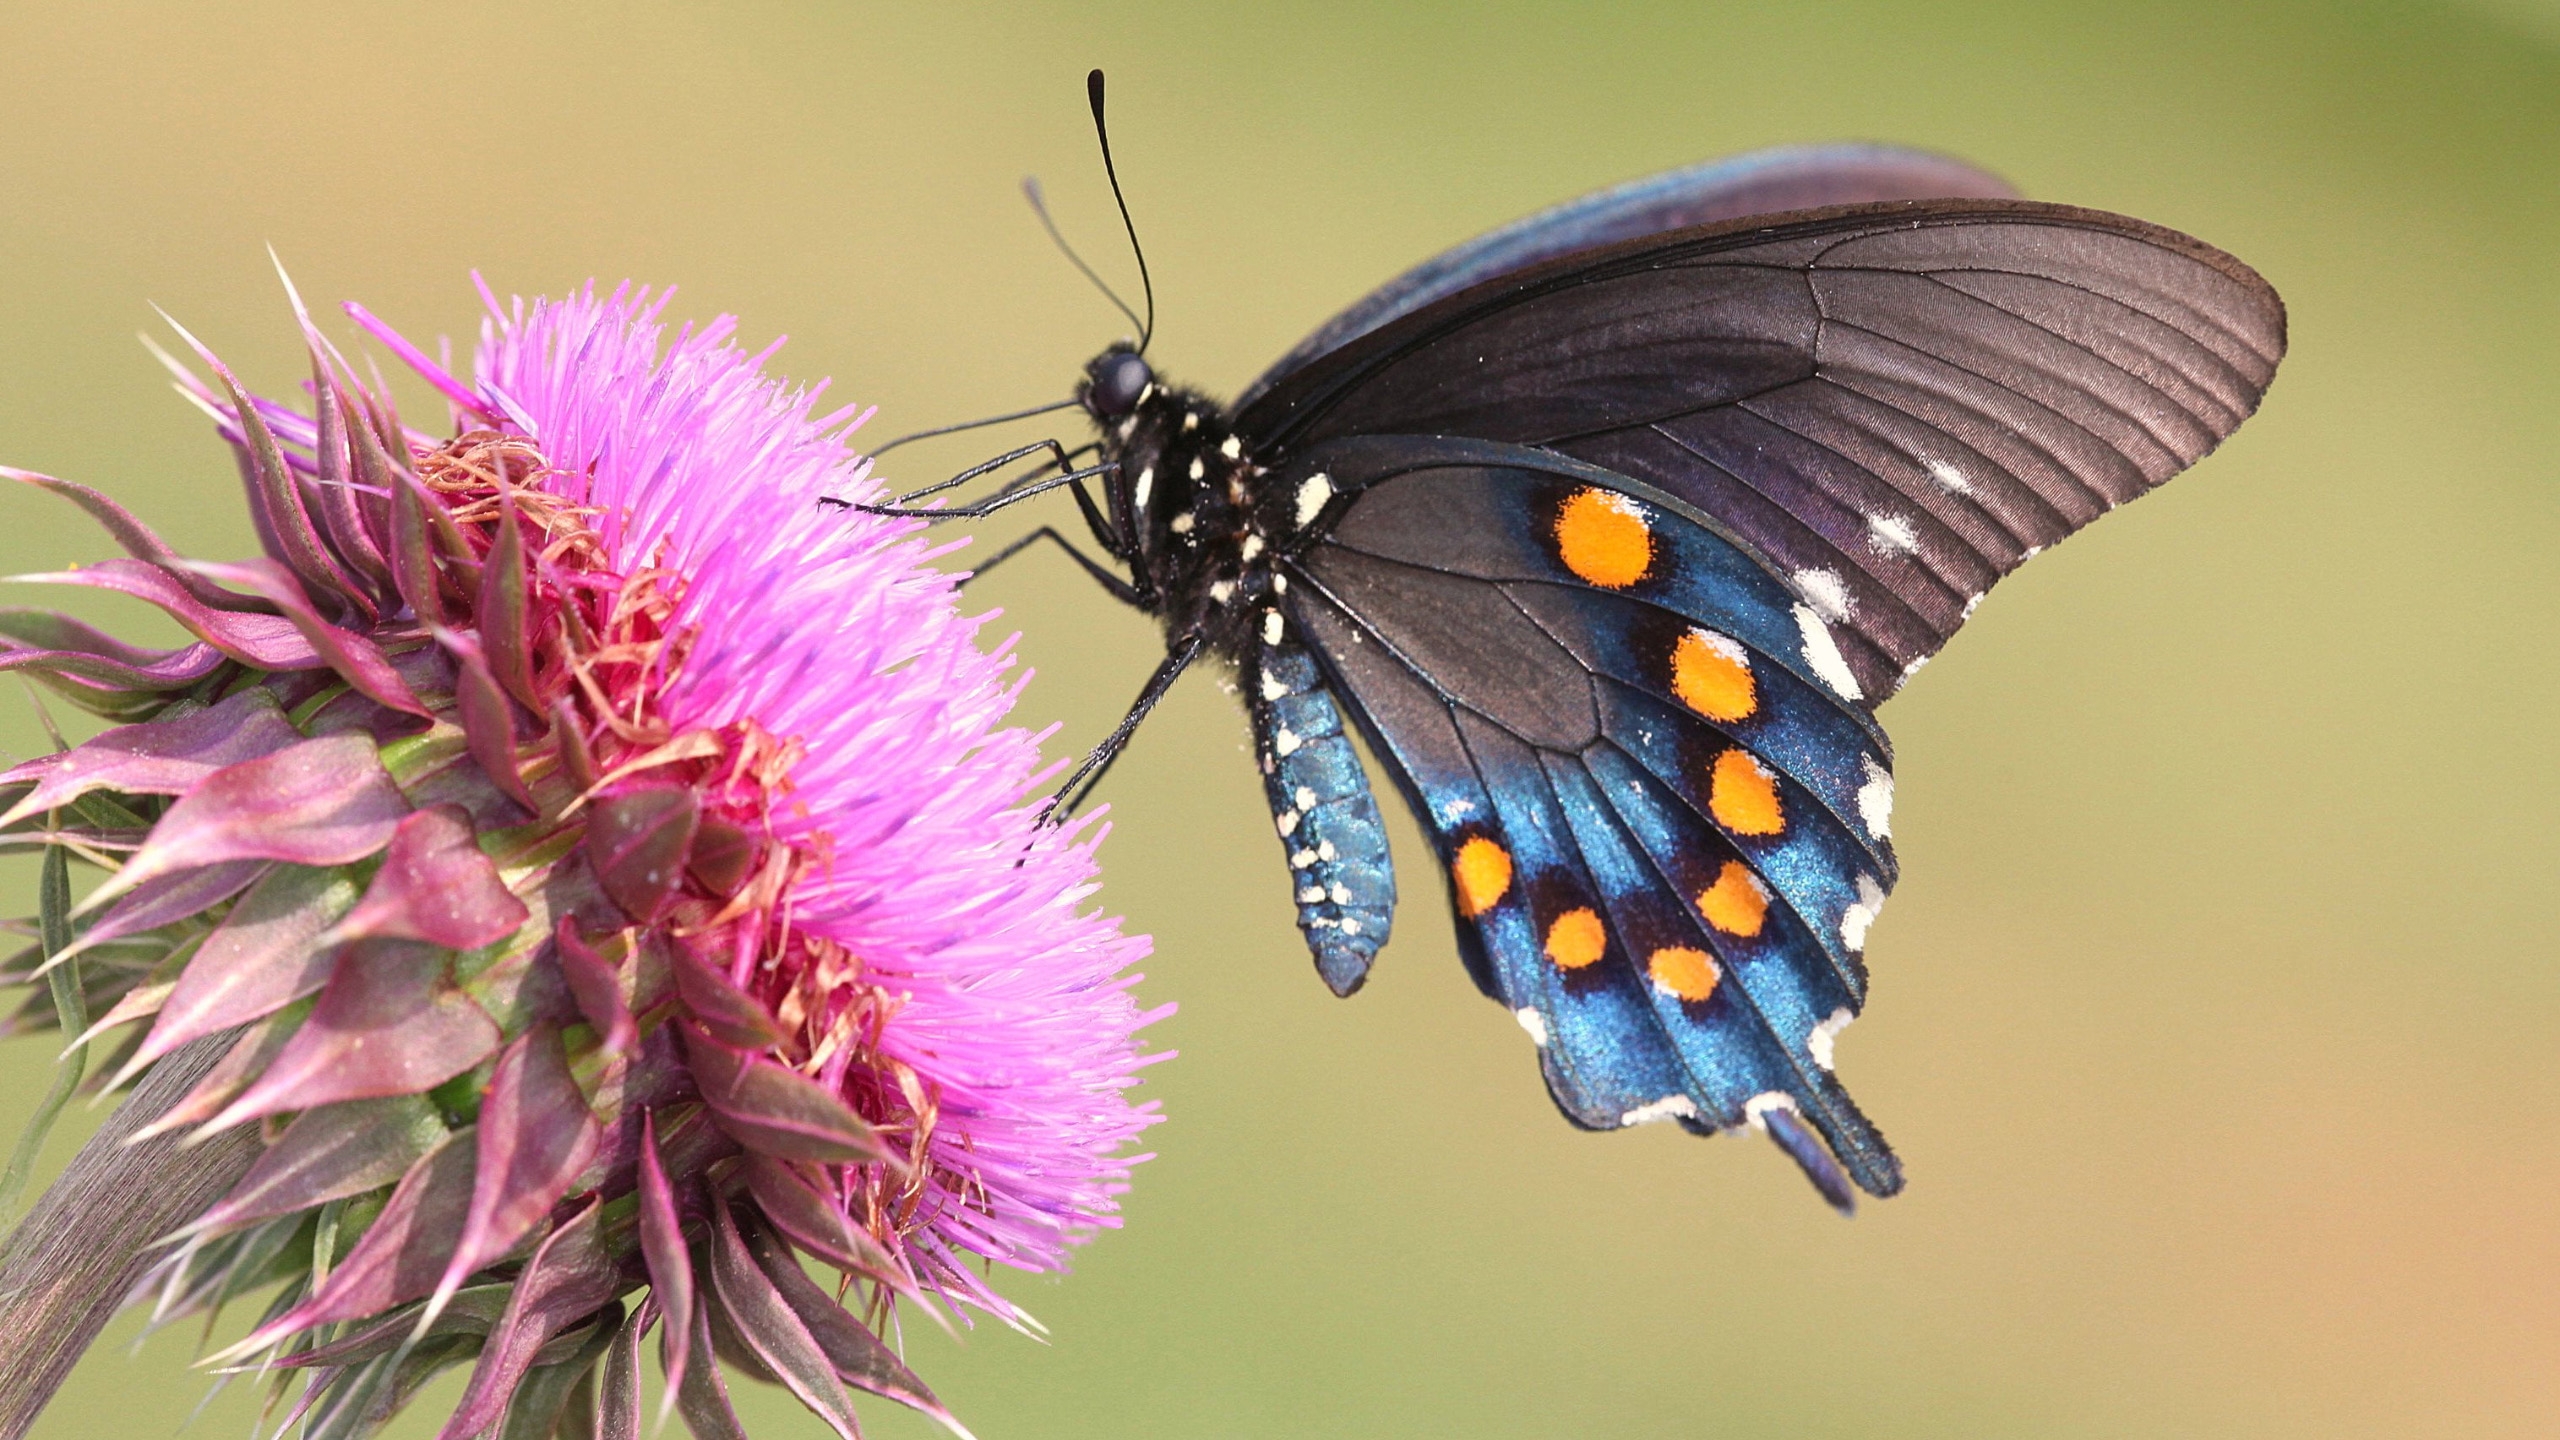 一只蓝蝴蝶从一朵粉红色的花中采集花蜜